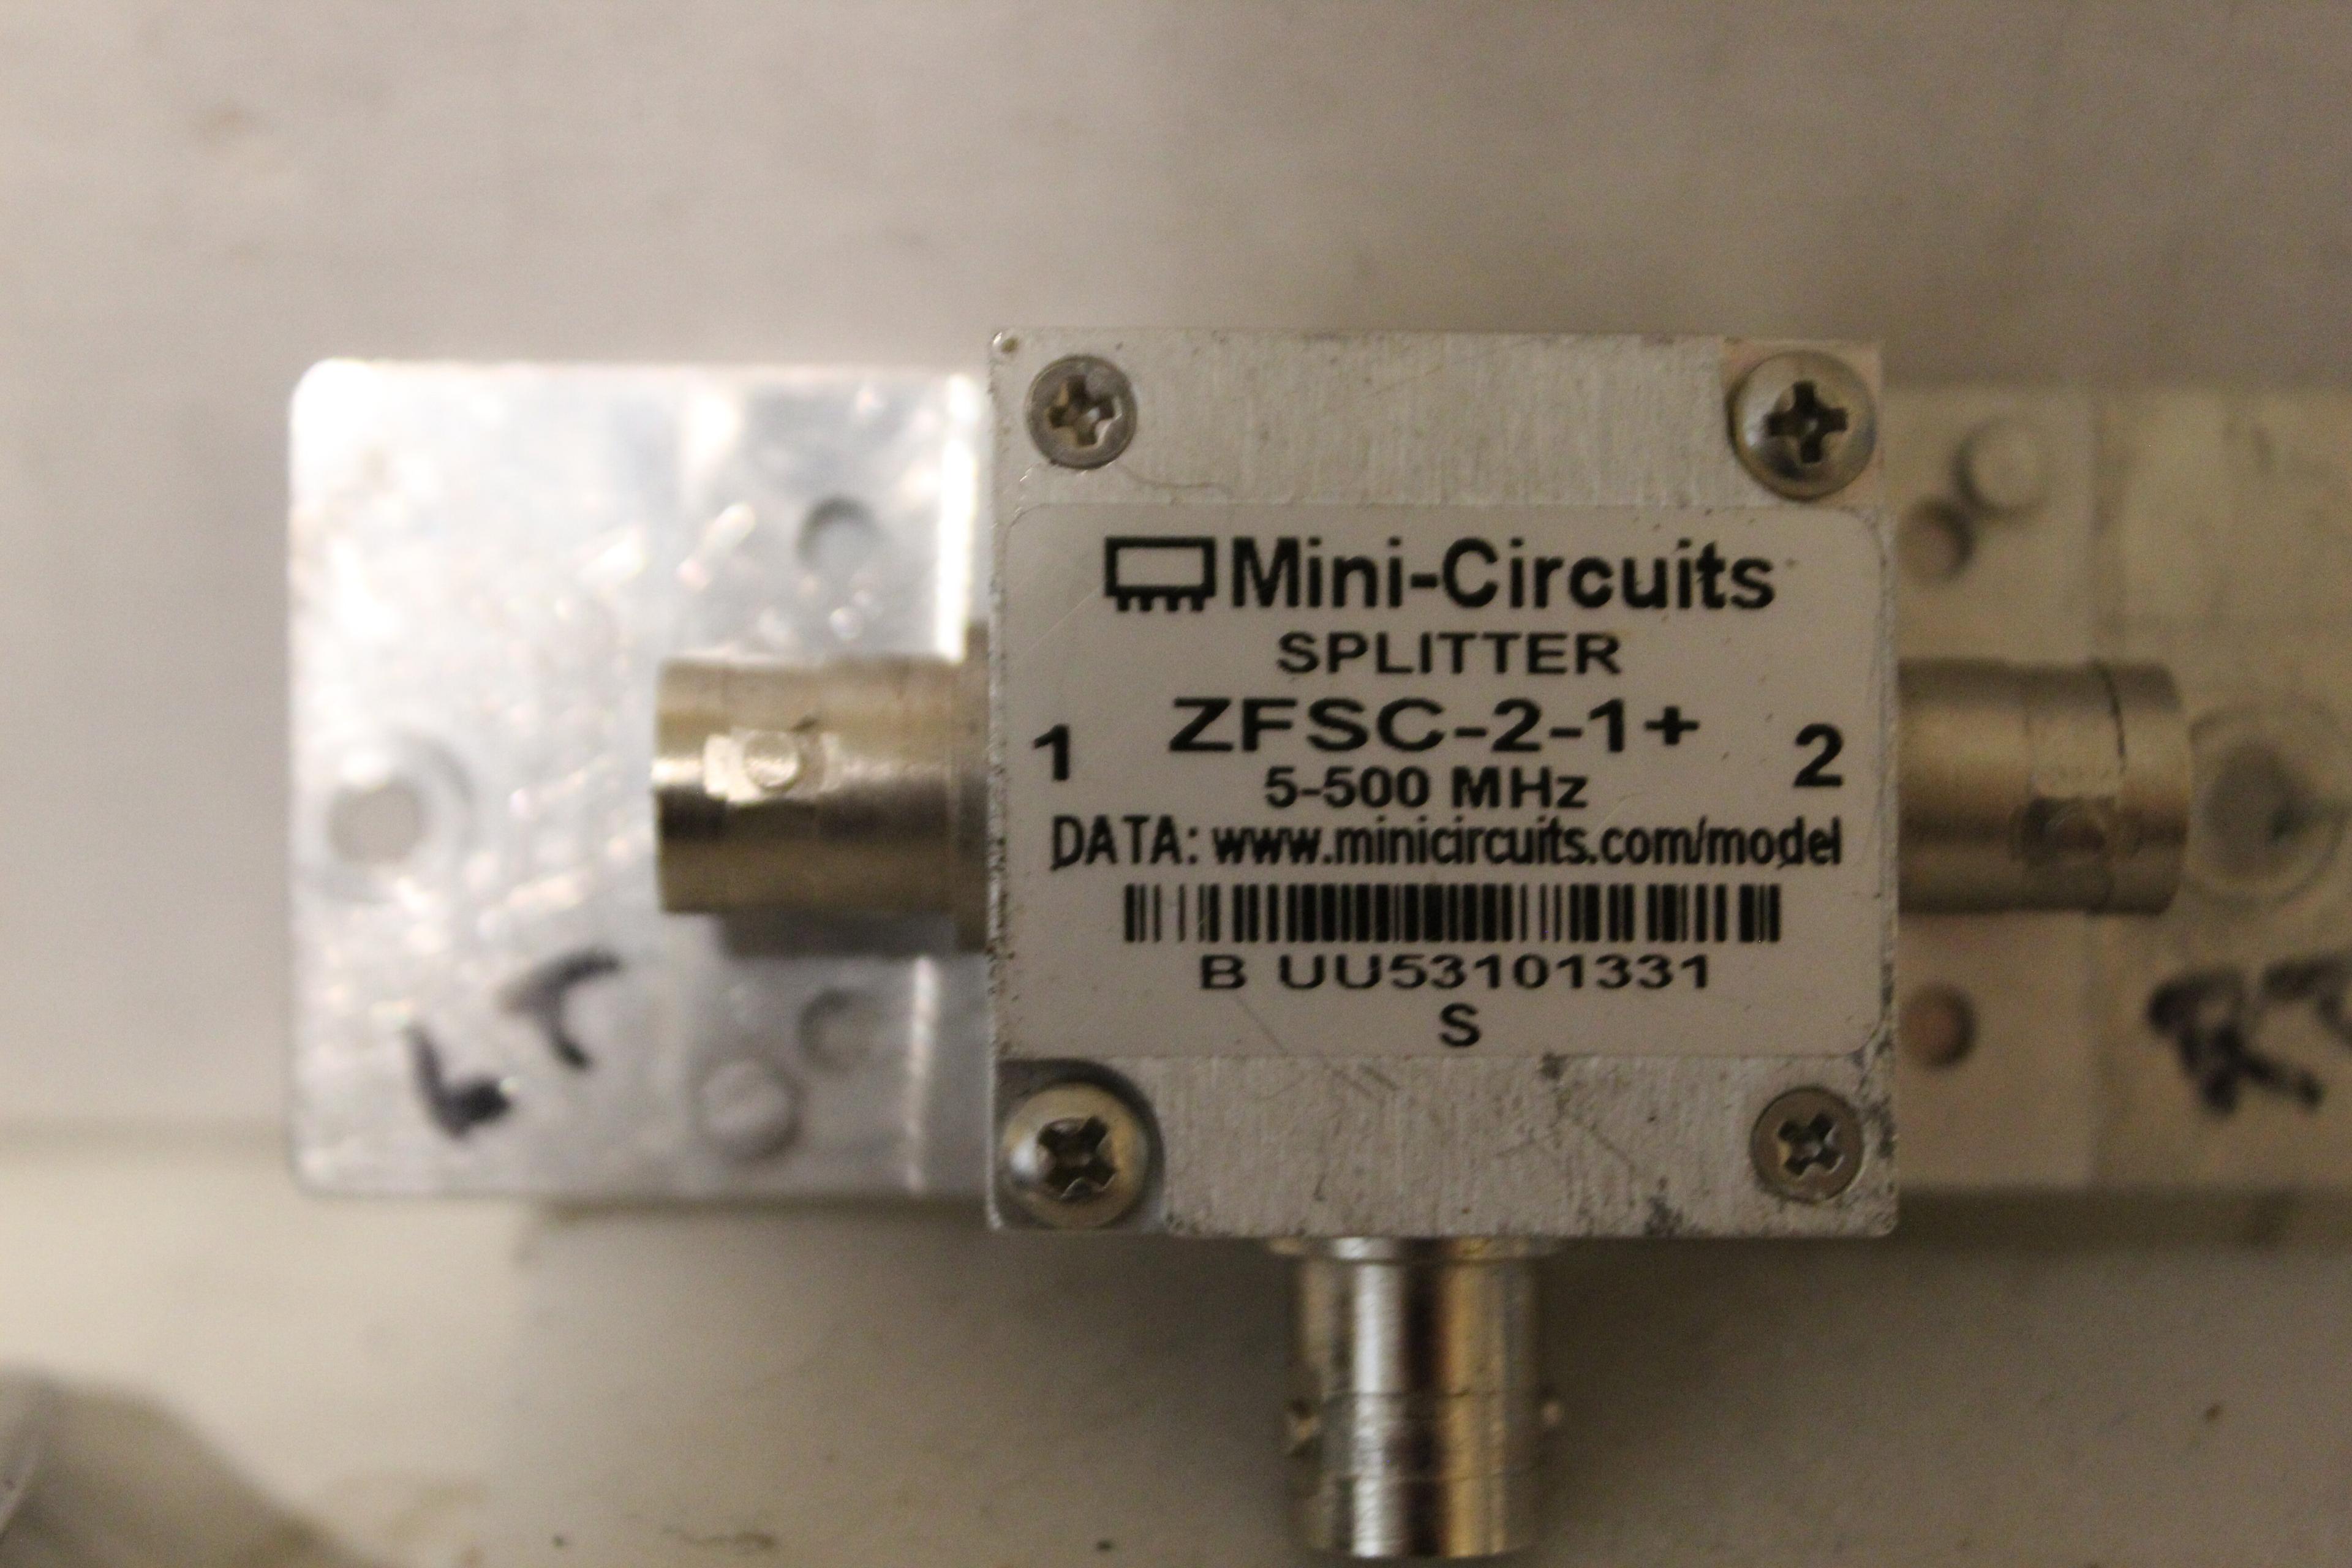 Mini Circuits Splitter Zfsc-2-1+